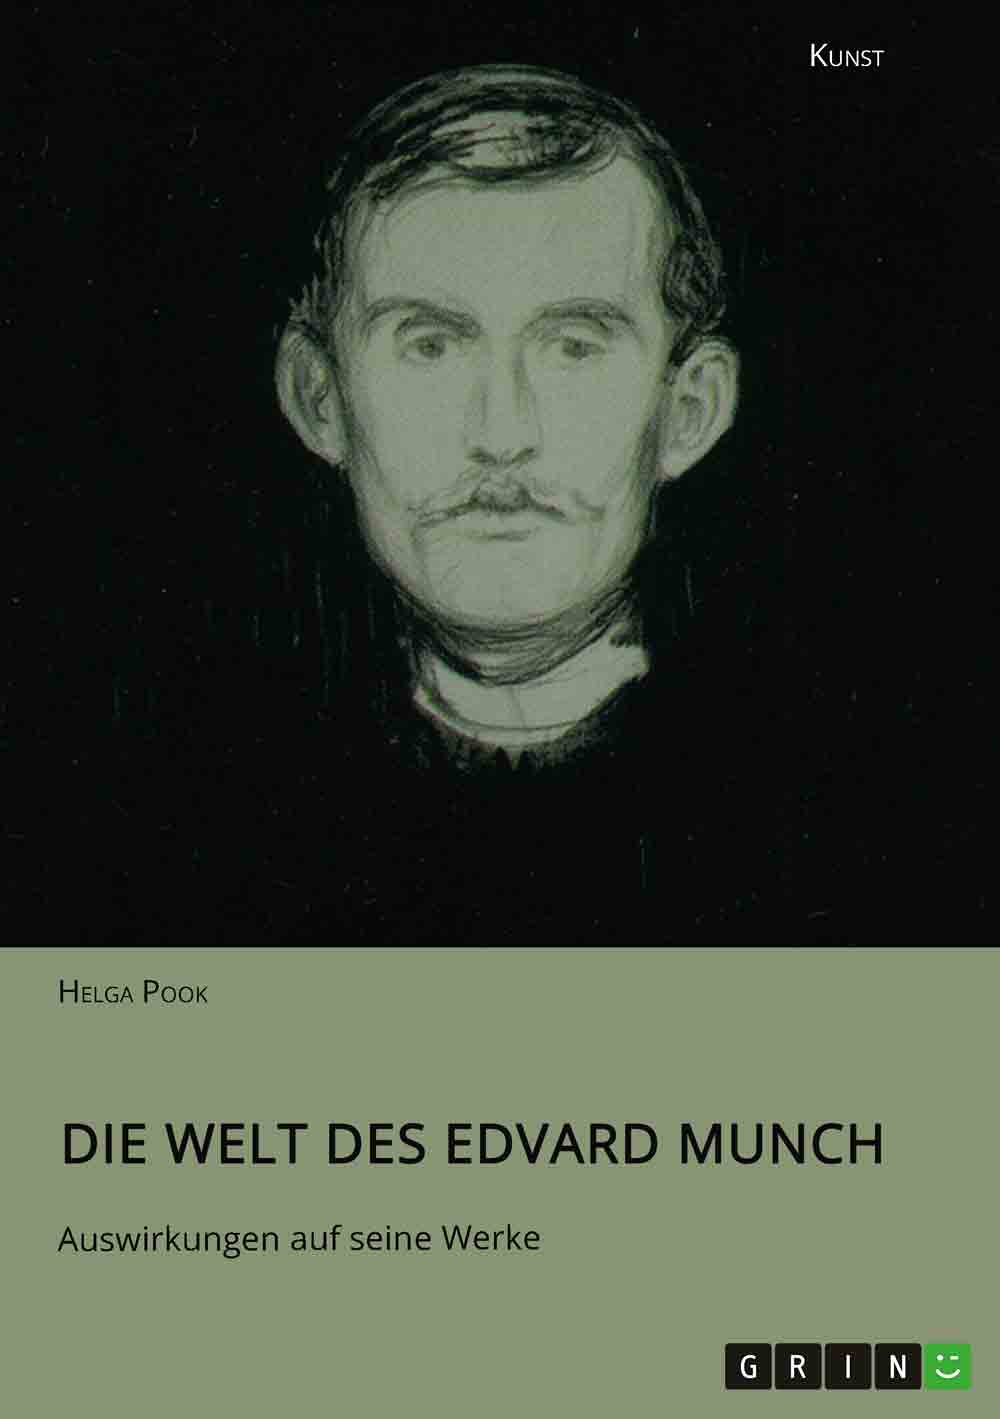 Lesetipps für Gütersloh, Edvard Munch, Öffentliches und Privates in der Kunst